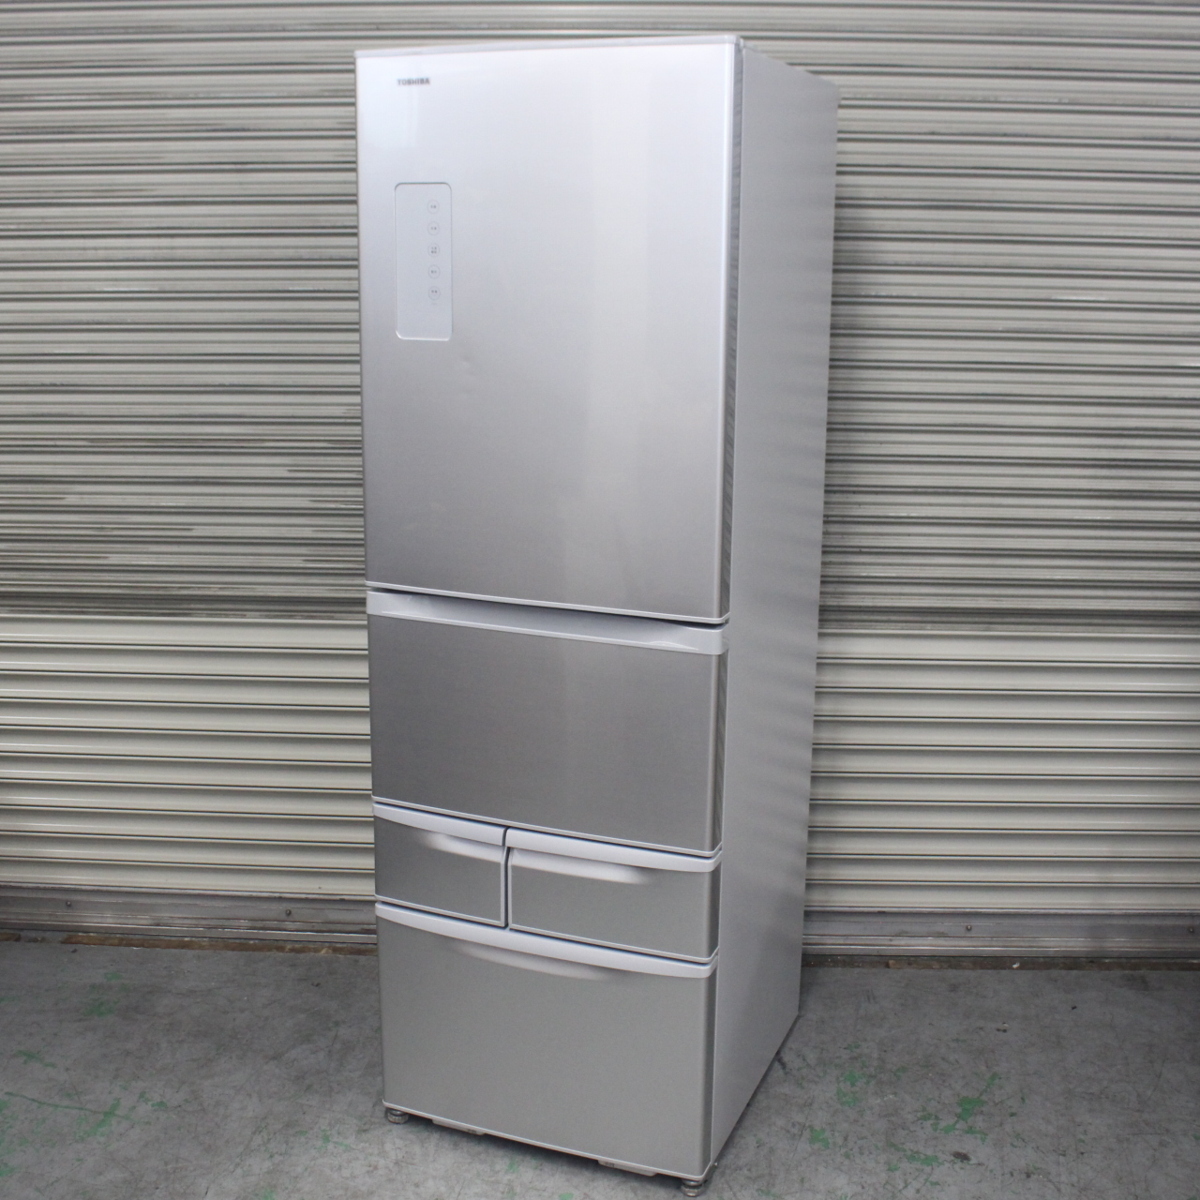 東京都品川区にて 東芝 冷凍冷蔵庫 GR-H43G 2015年製 を出張買取させて頂きました。